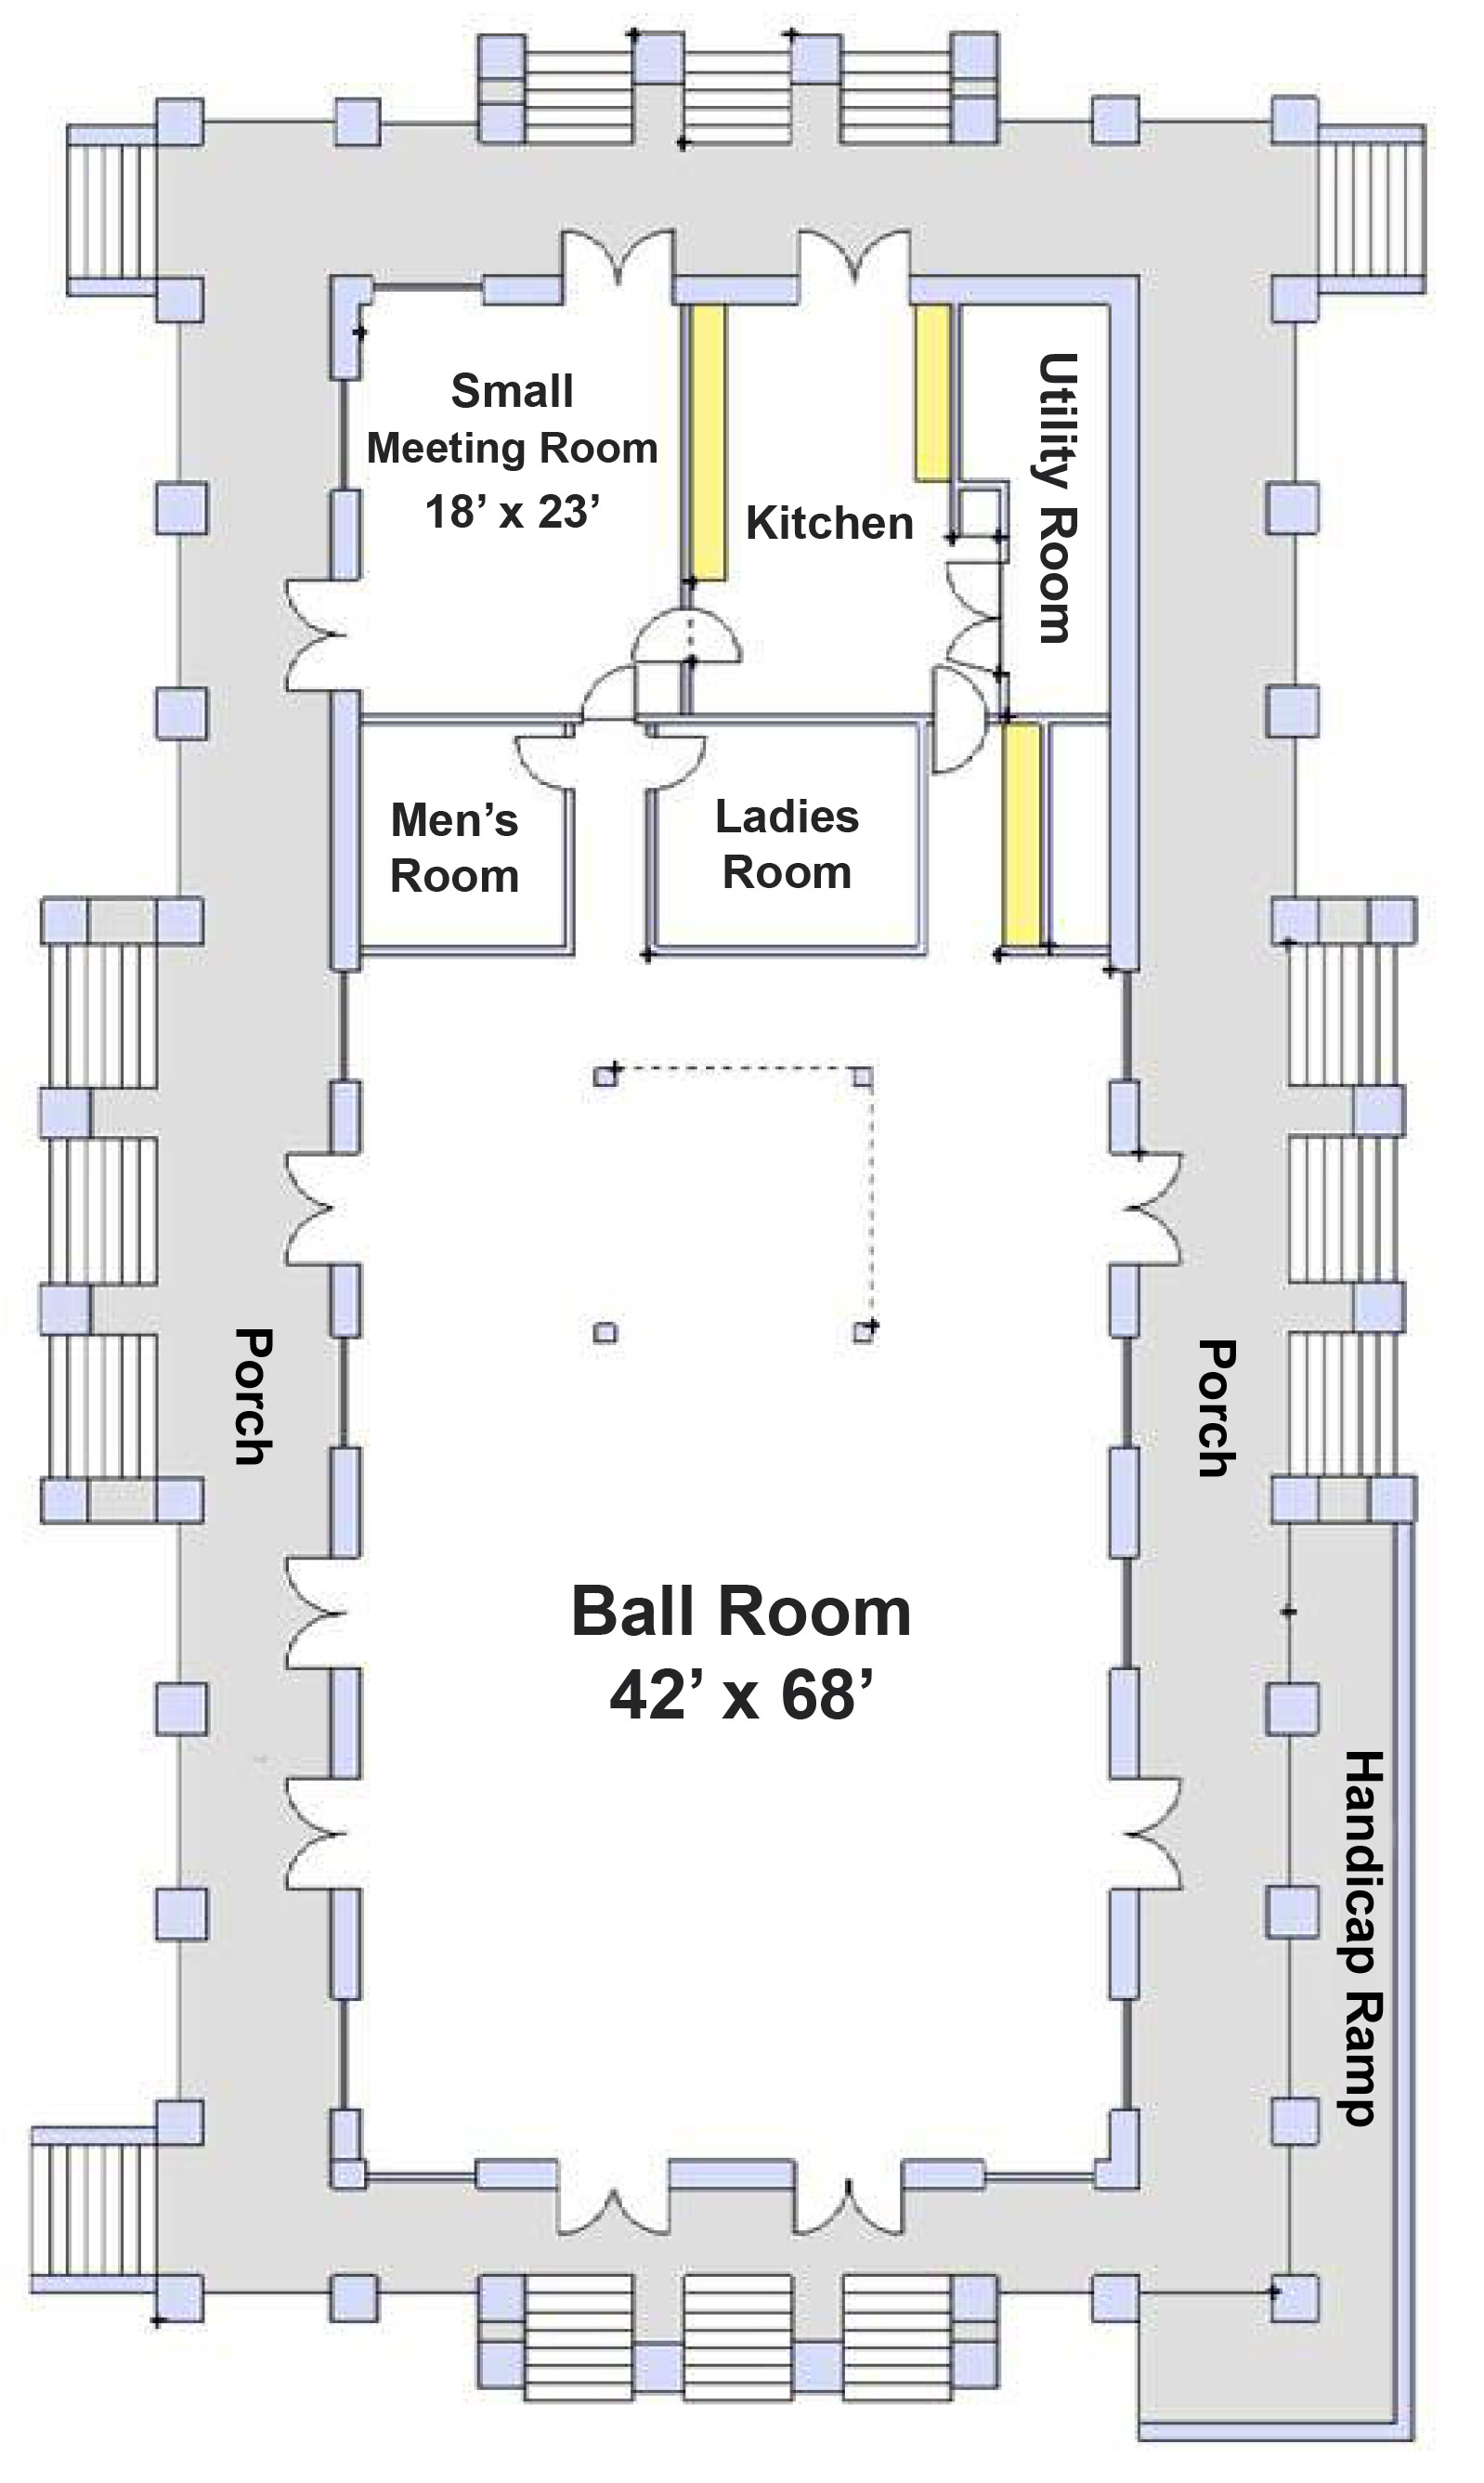 NAMAR Event Center Floor Plan